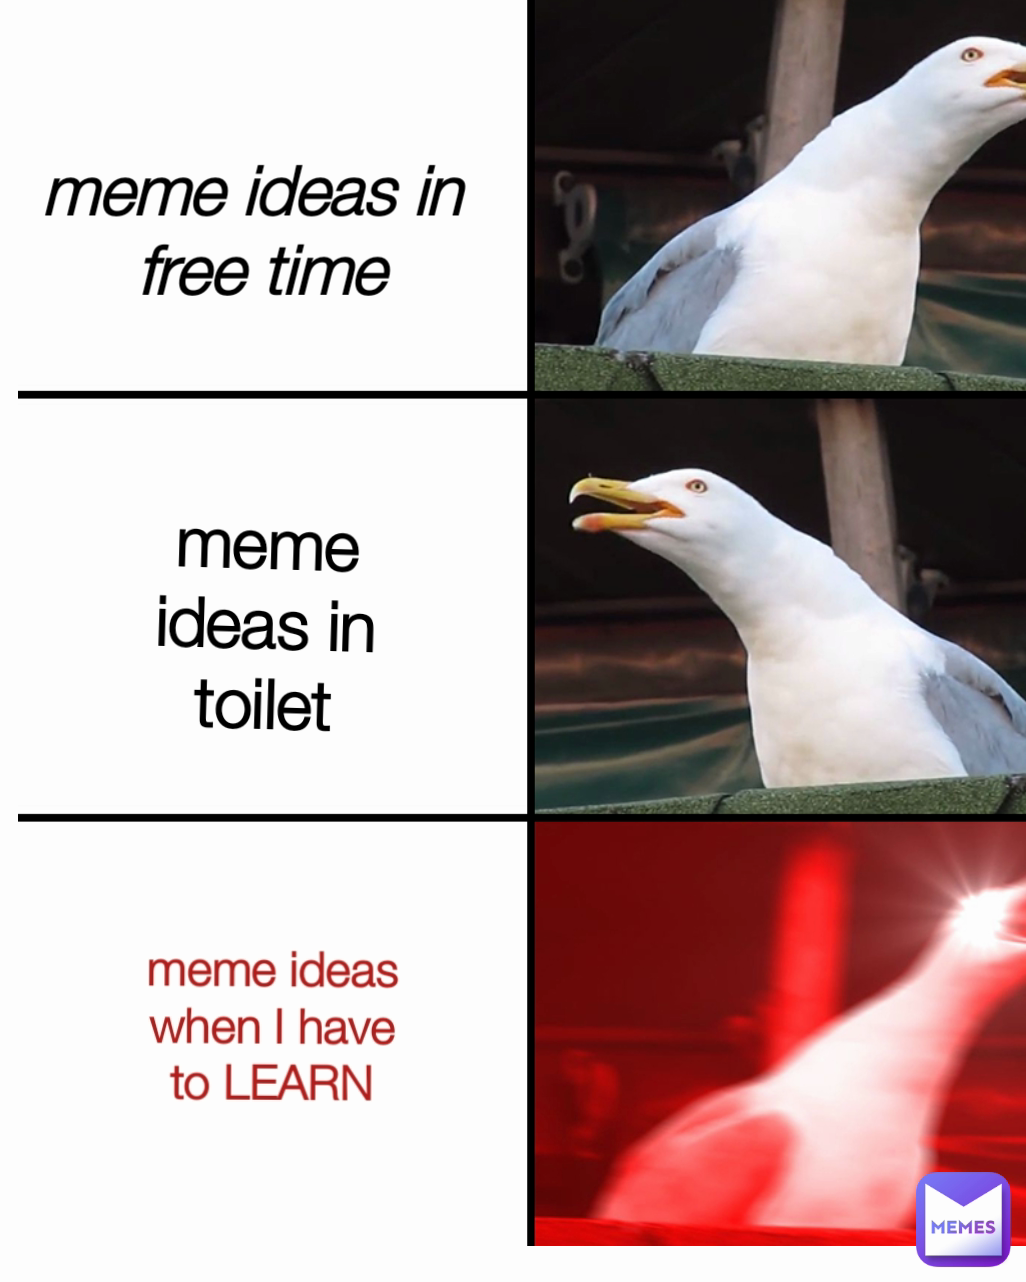 meme ideas in 
free time meme ideas in toilet meme ideas when I have to LEARN